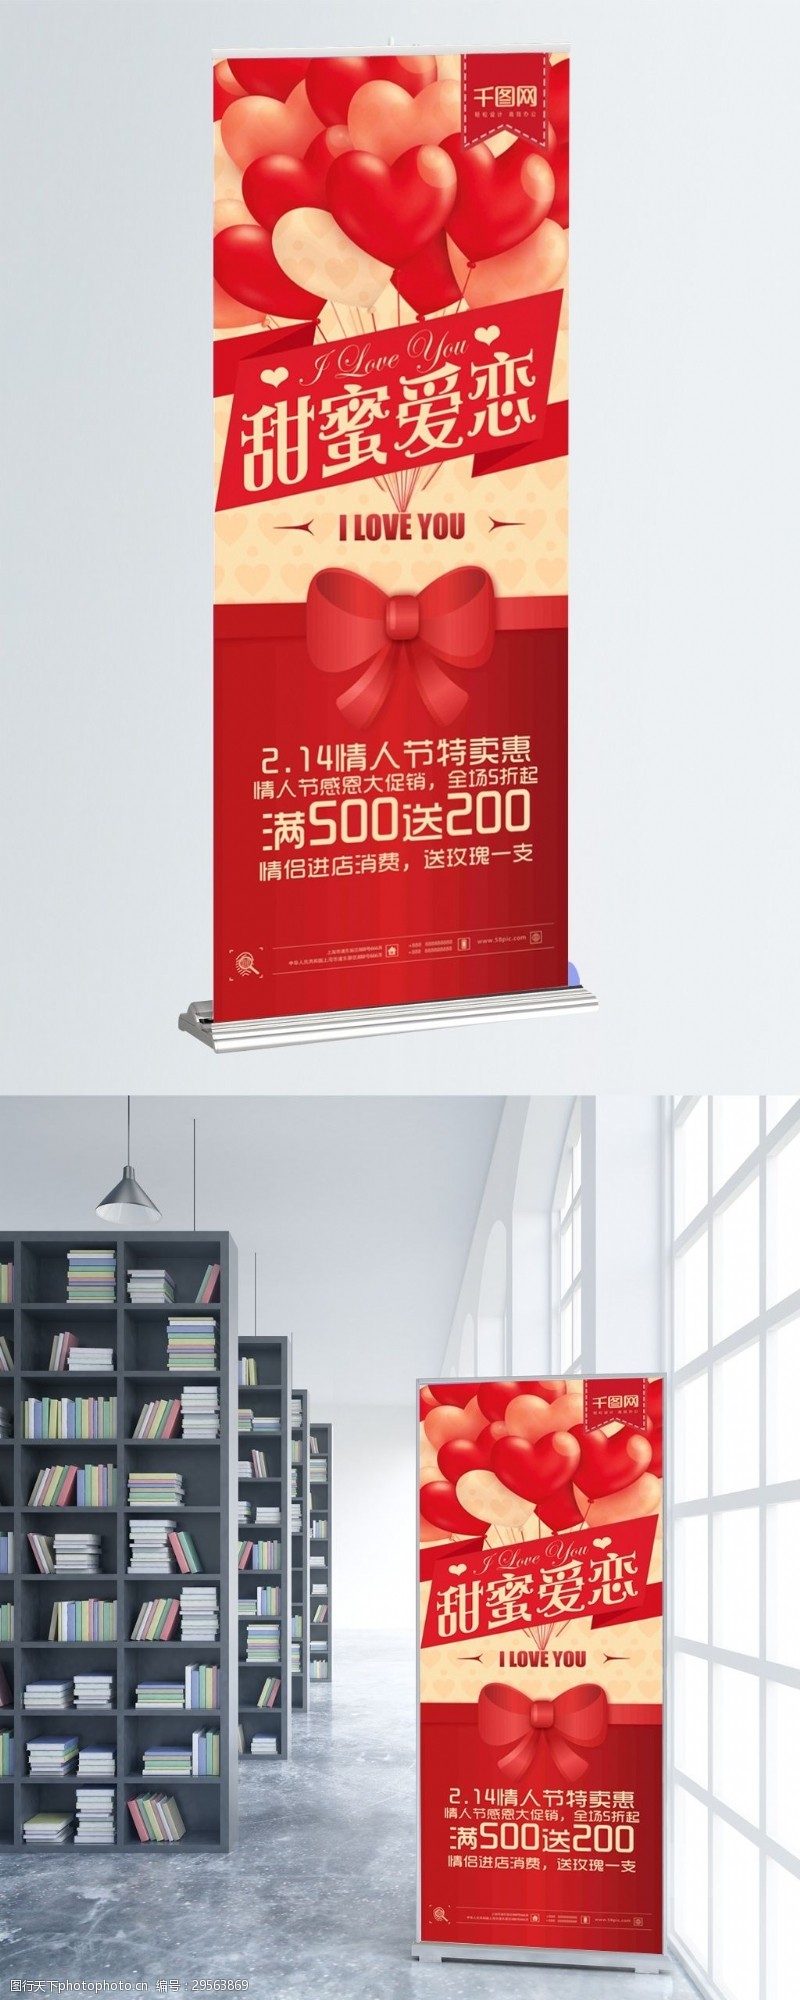 2.14情人节甜蜜爱恋心型气球促销X展架